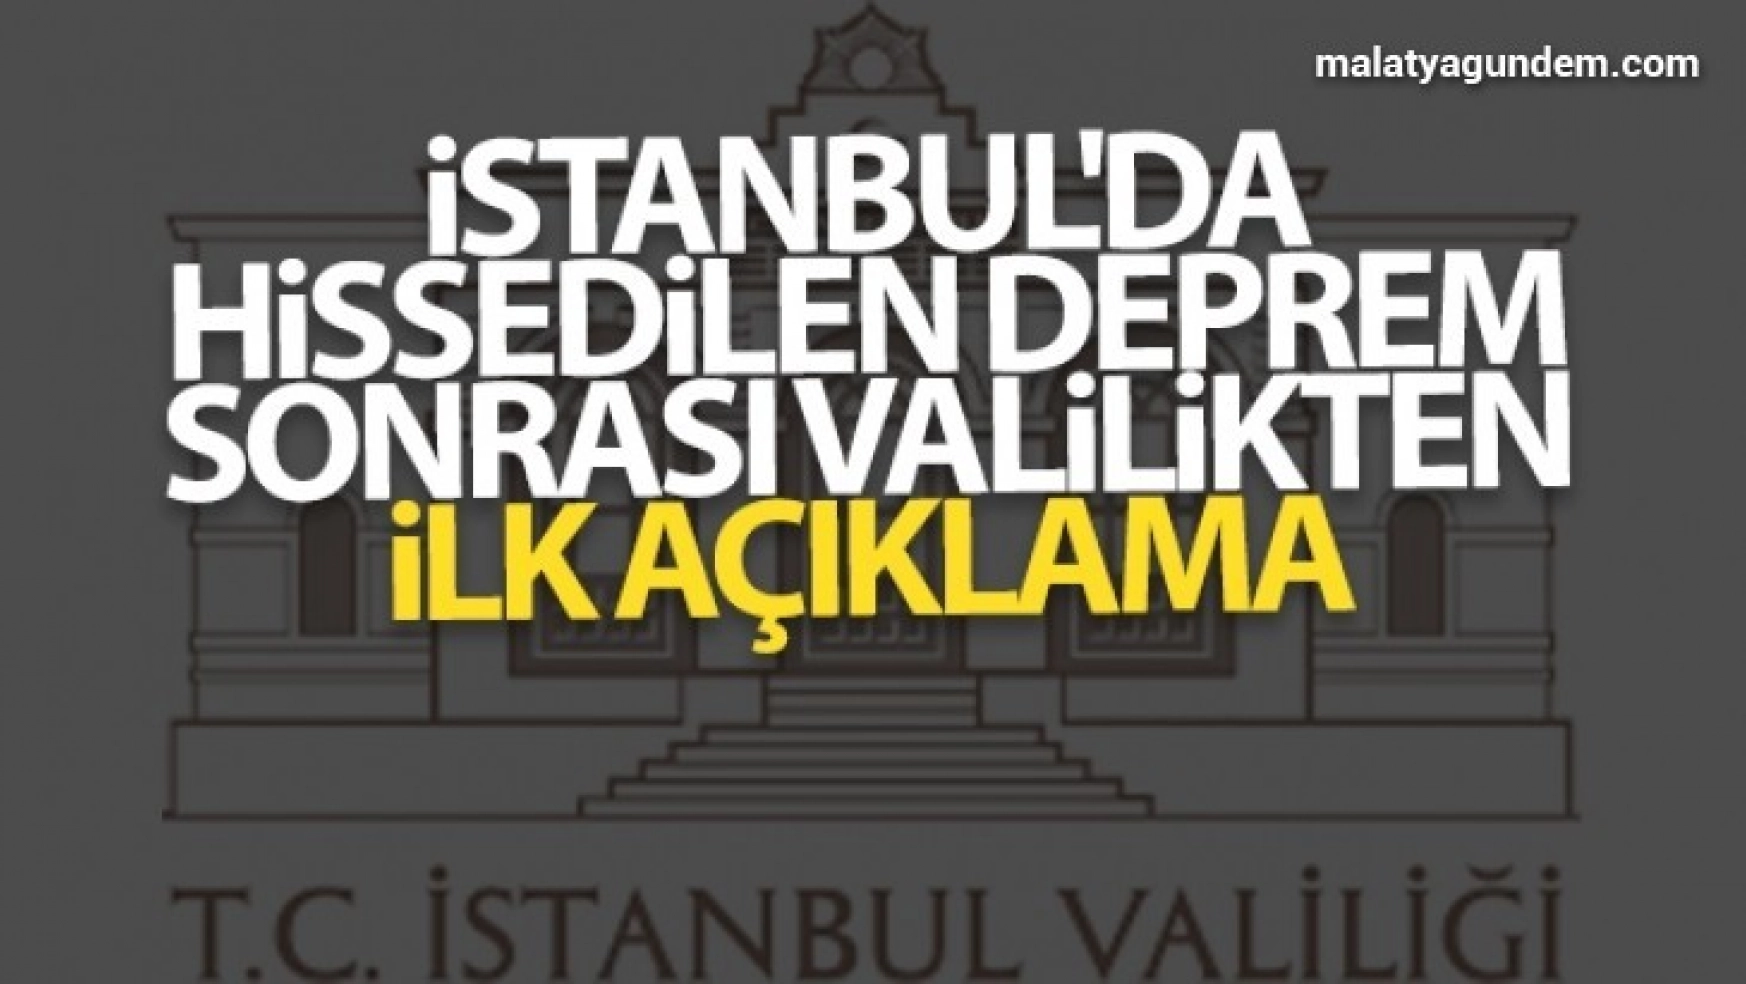 İstanbul'da hissedilen deprem sonrası valilikten ilk açıklama geldi.